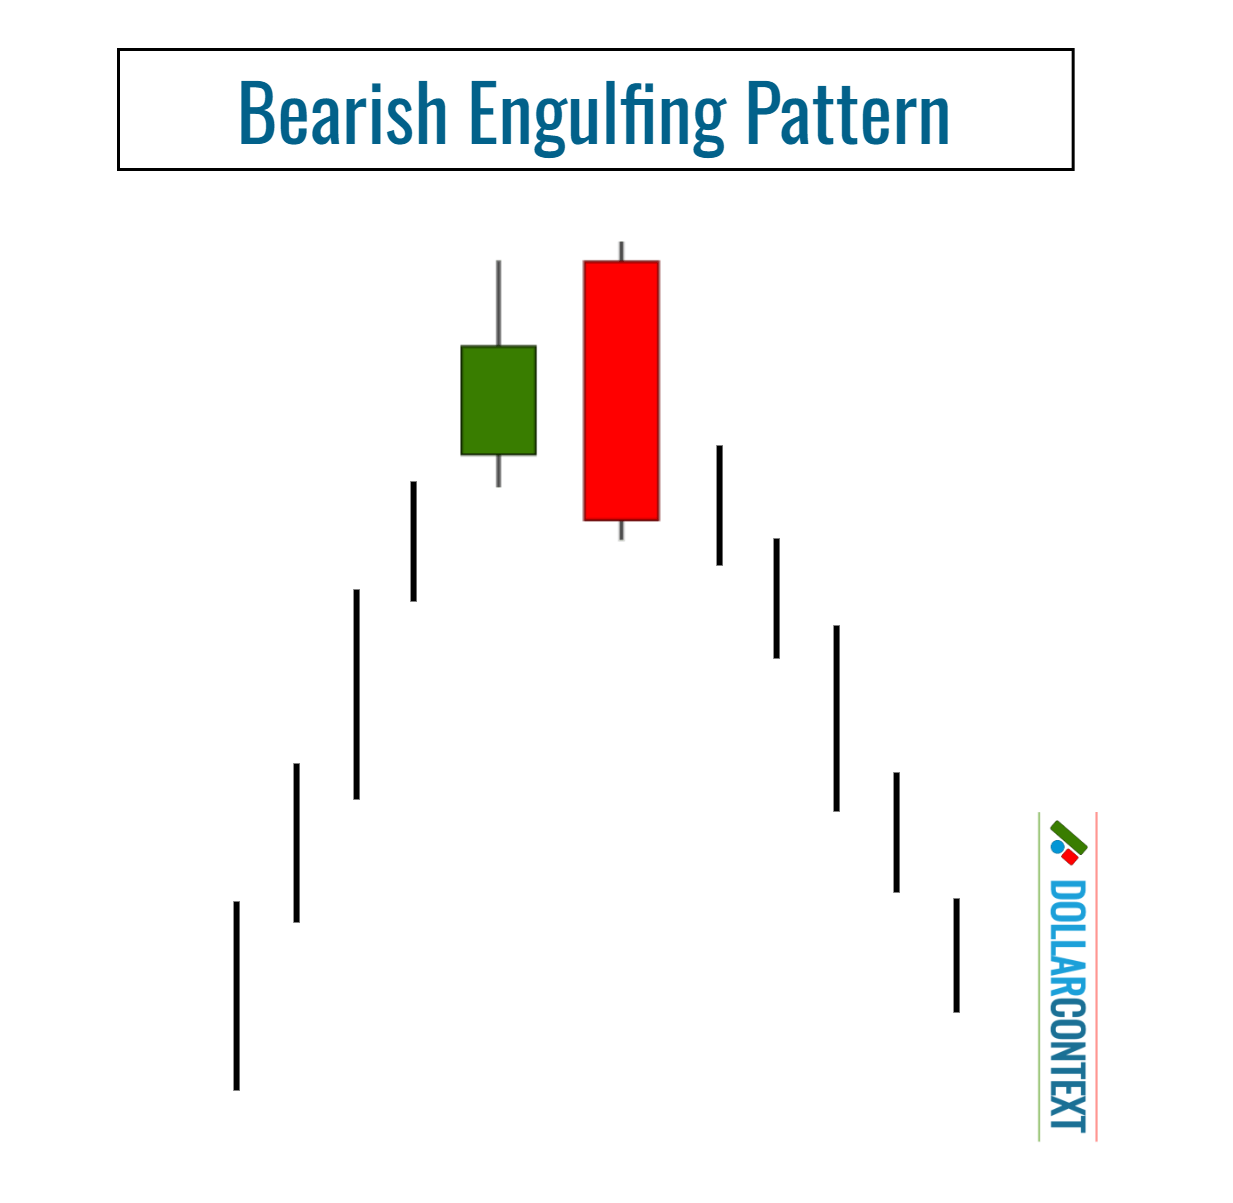 Shape and Context of a Bearish Engulfing Pattern